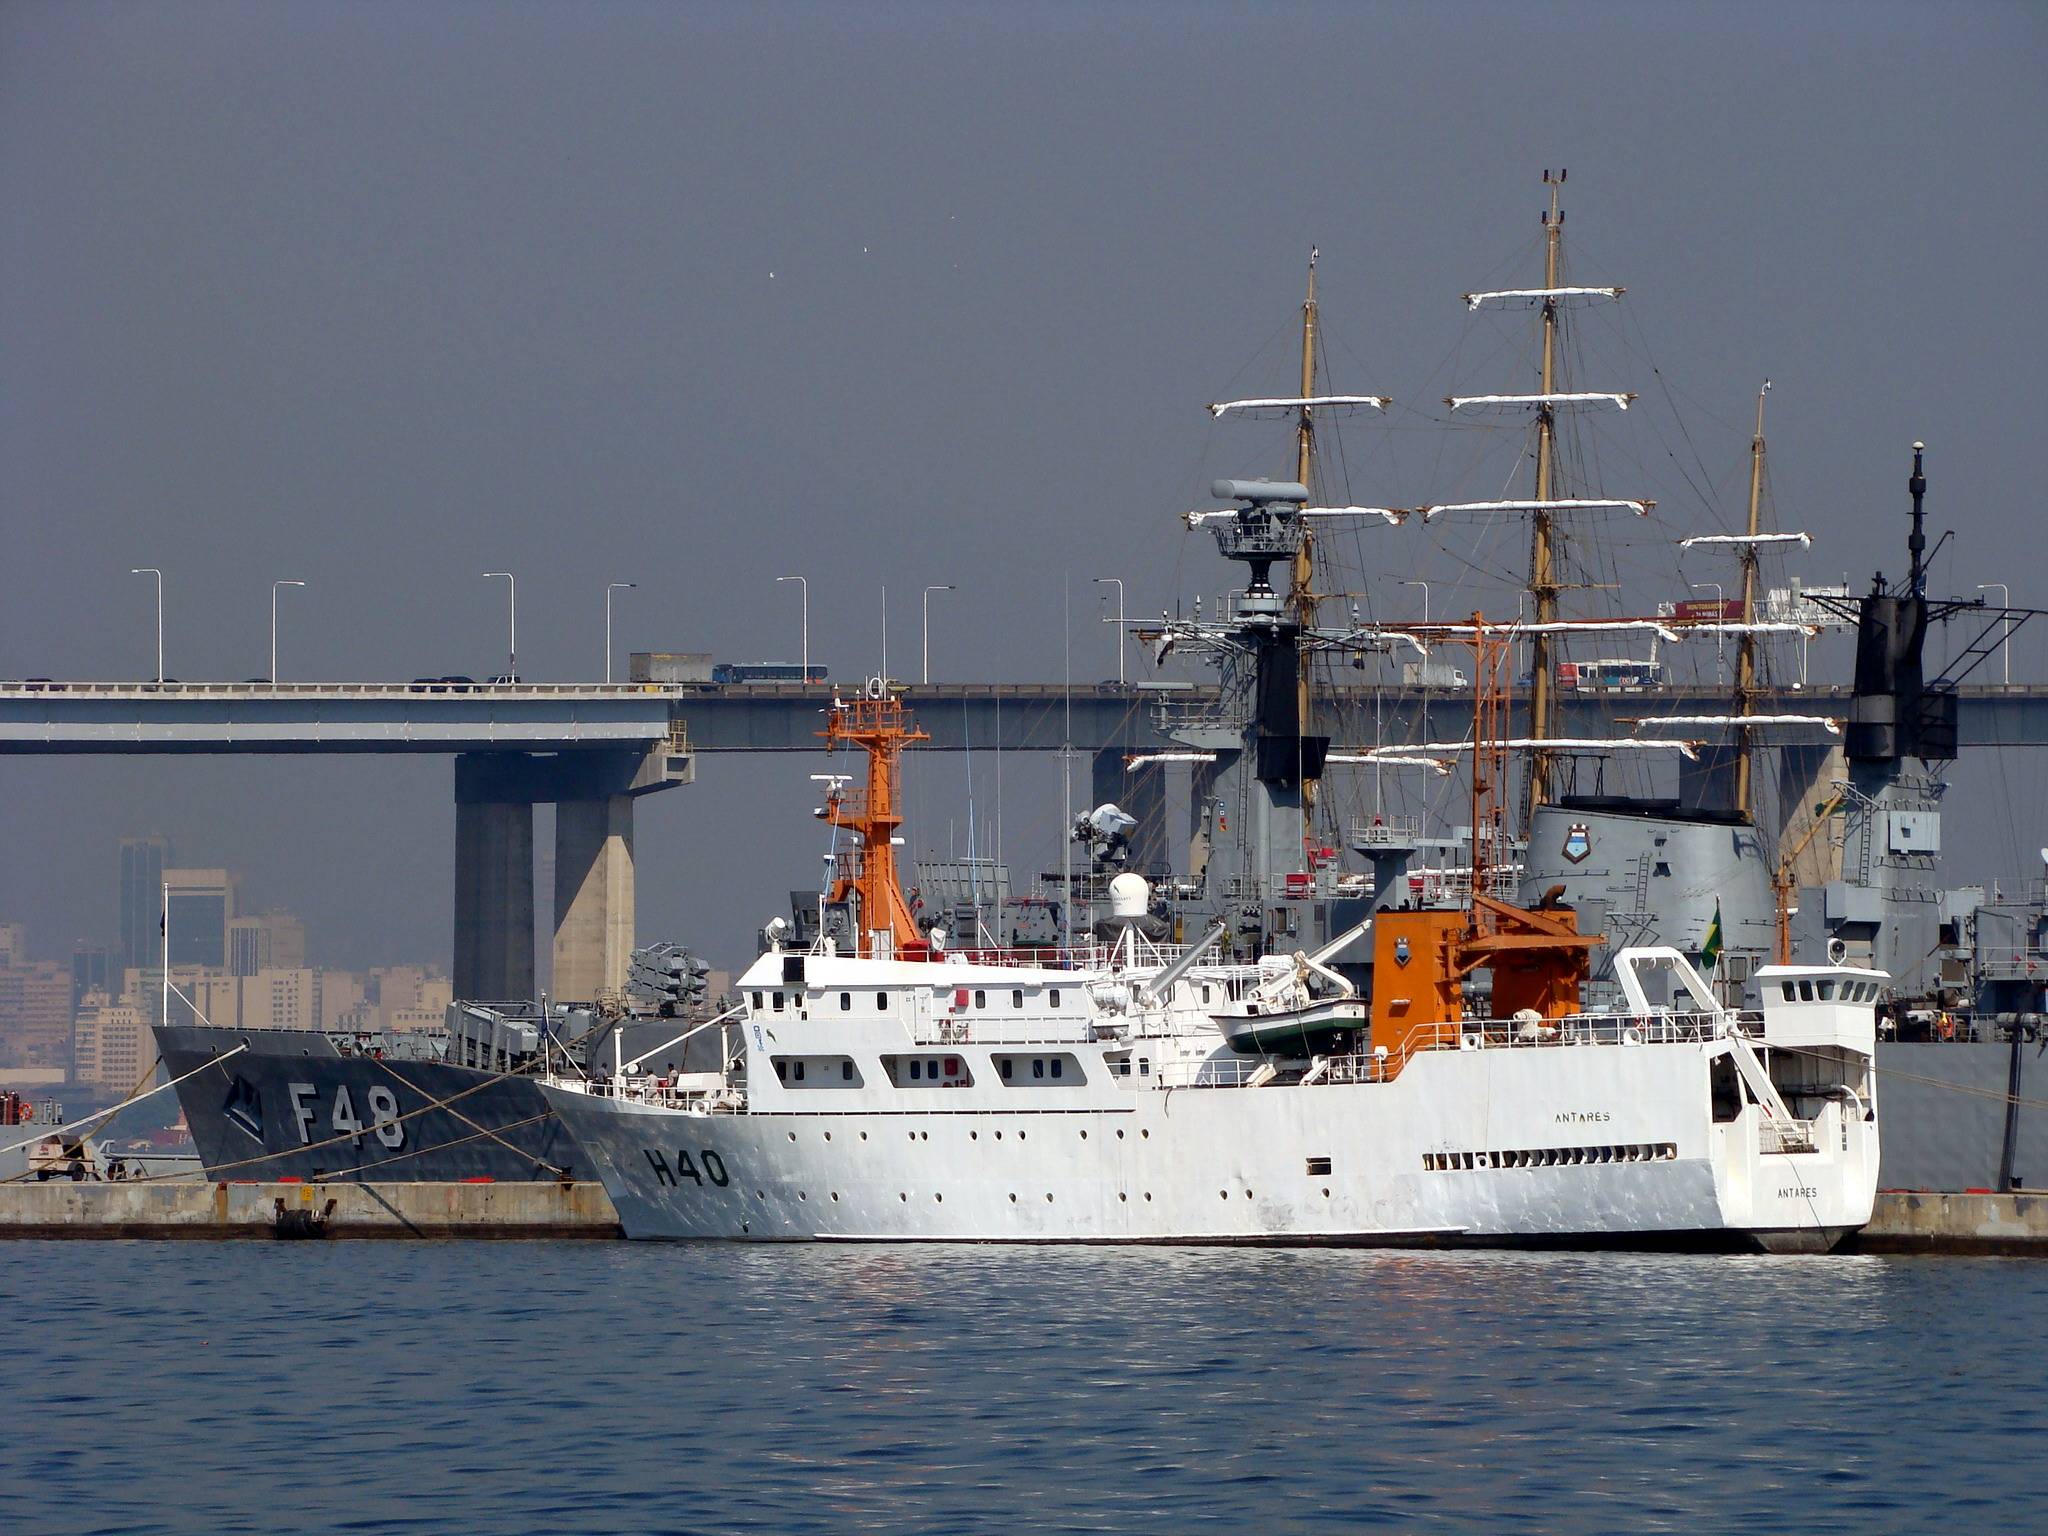 O Antares atracado na Base Naval do Rio de Janeiro em 20 de abril de 2009. (foto: Diario Portuário - César T. Neves)